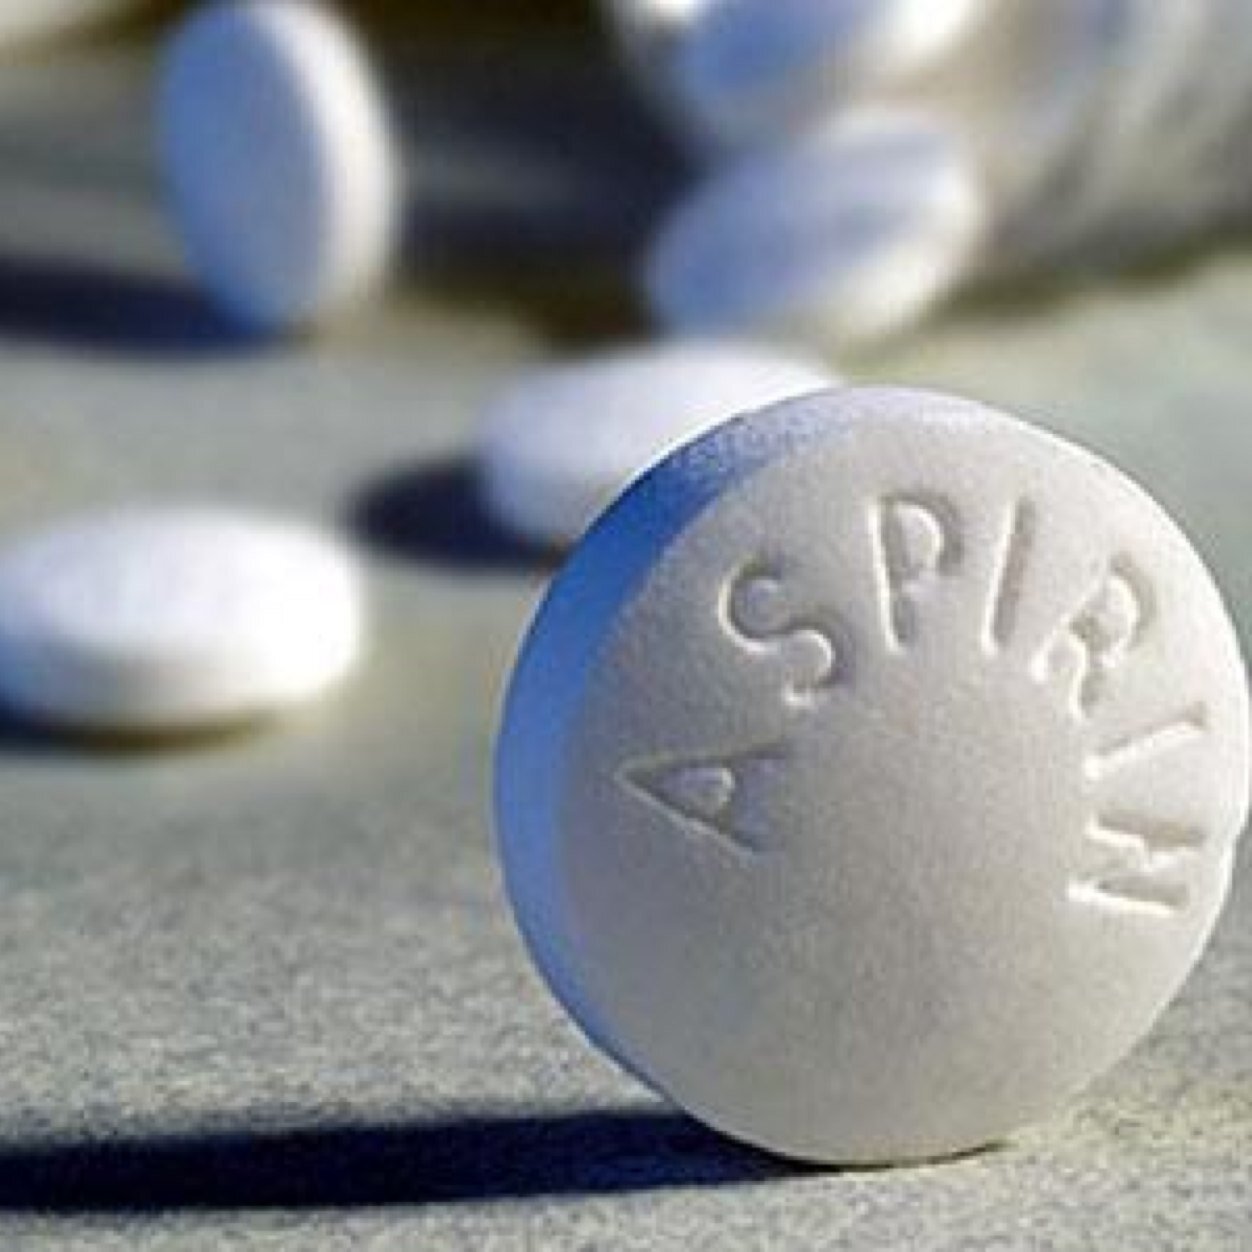 VFIEsaF  - Ученые выяснили, что аспирин способен предотвратить возникновение рака толстой кишки